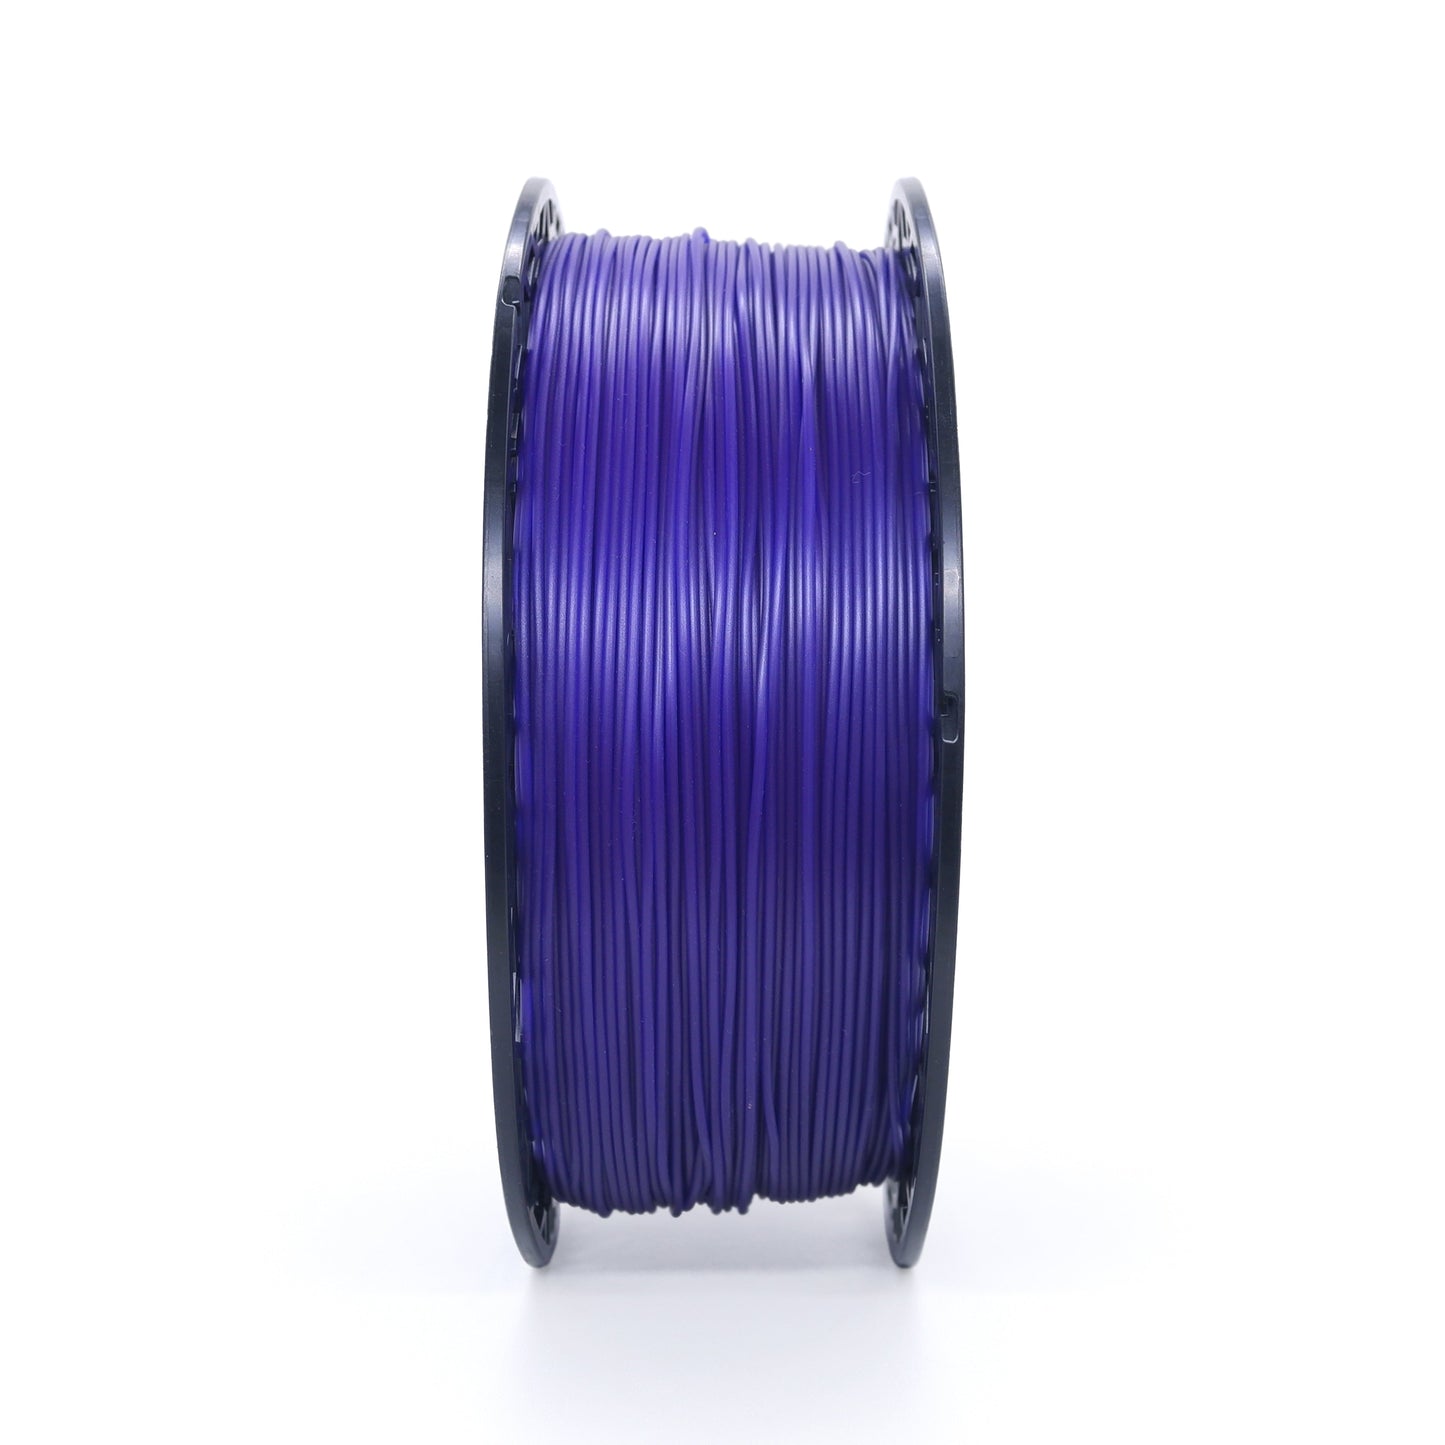 Uzy Basic PLA Filament 1.75mm ± 0.05mm Galaxy Purple 1Kg